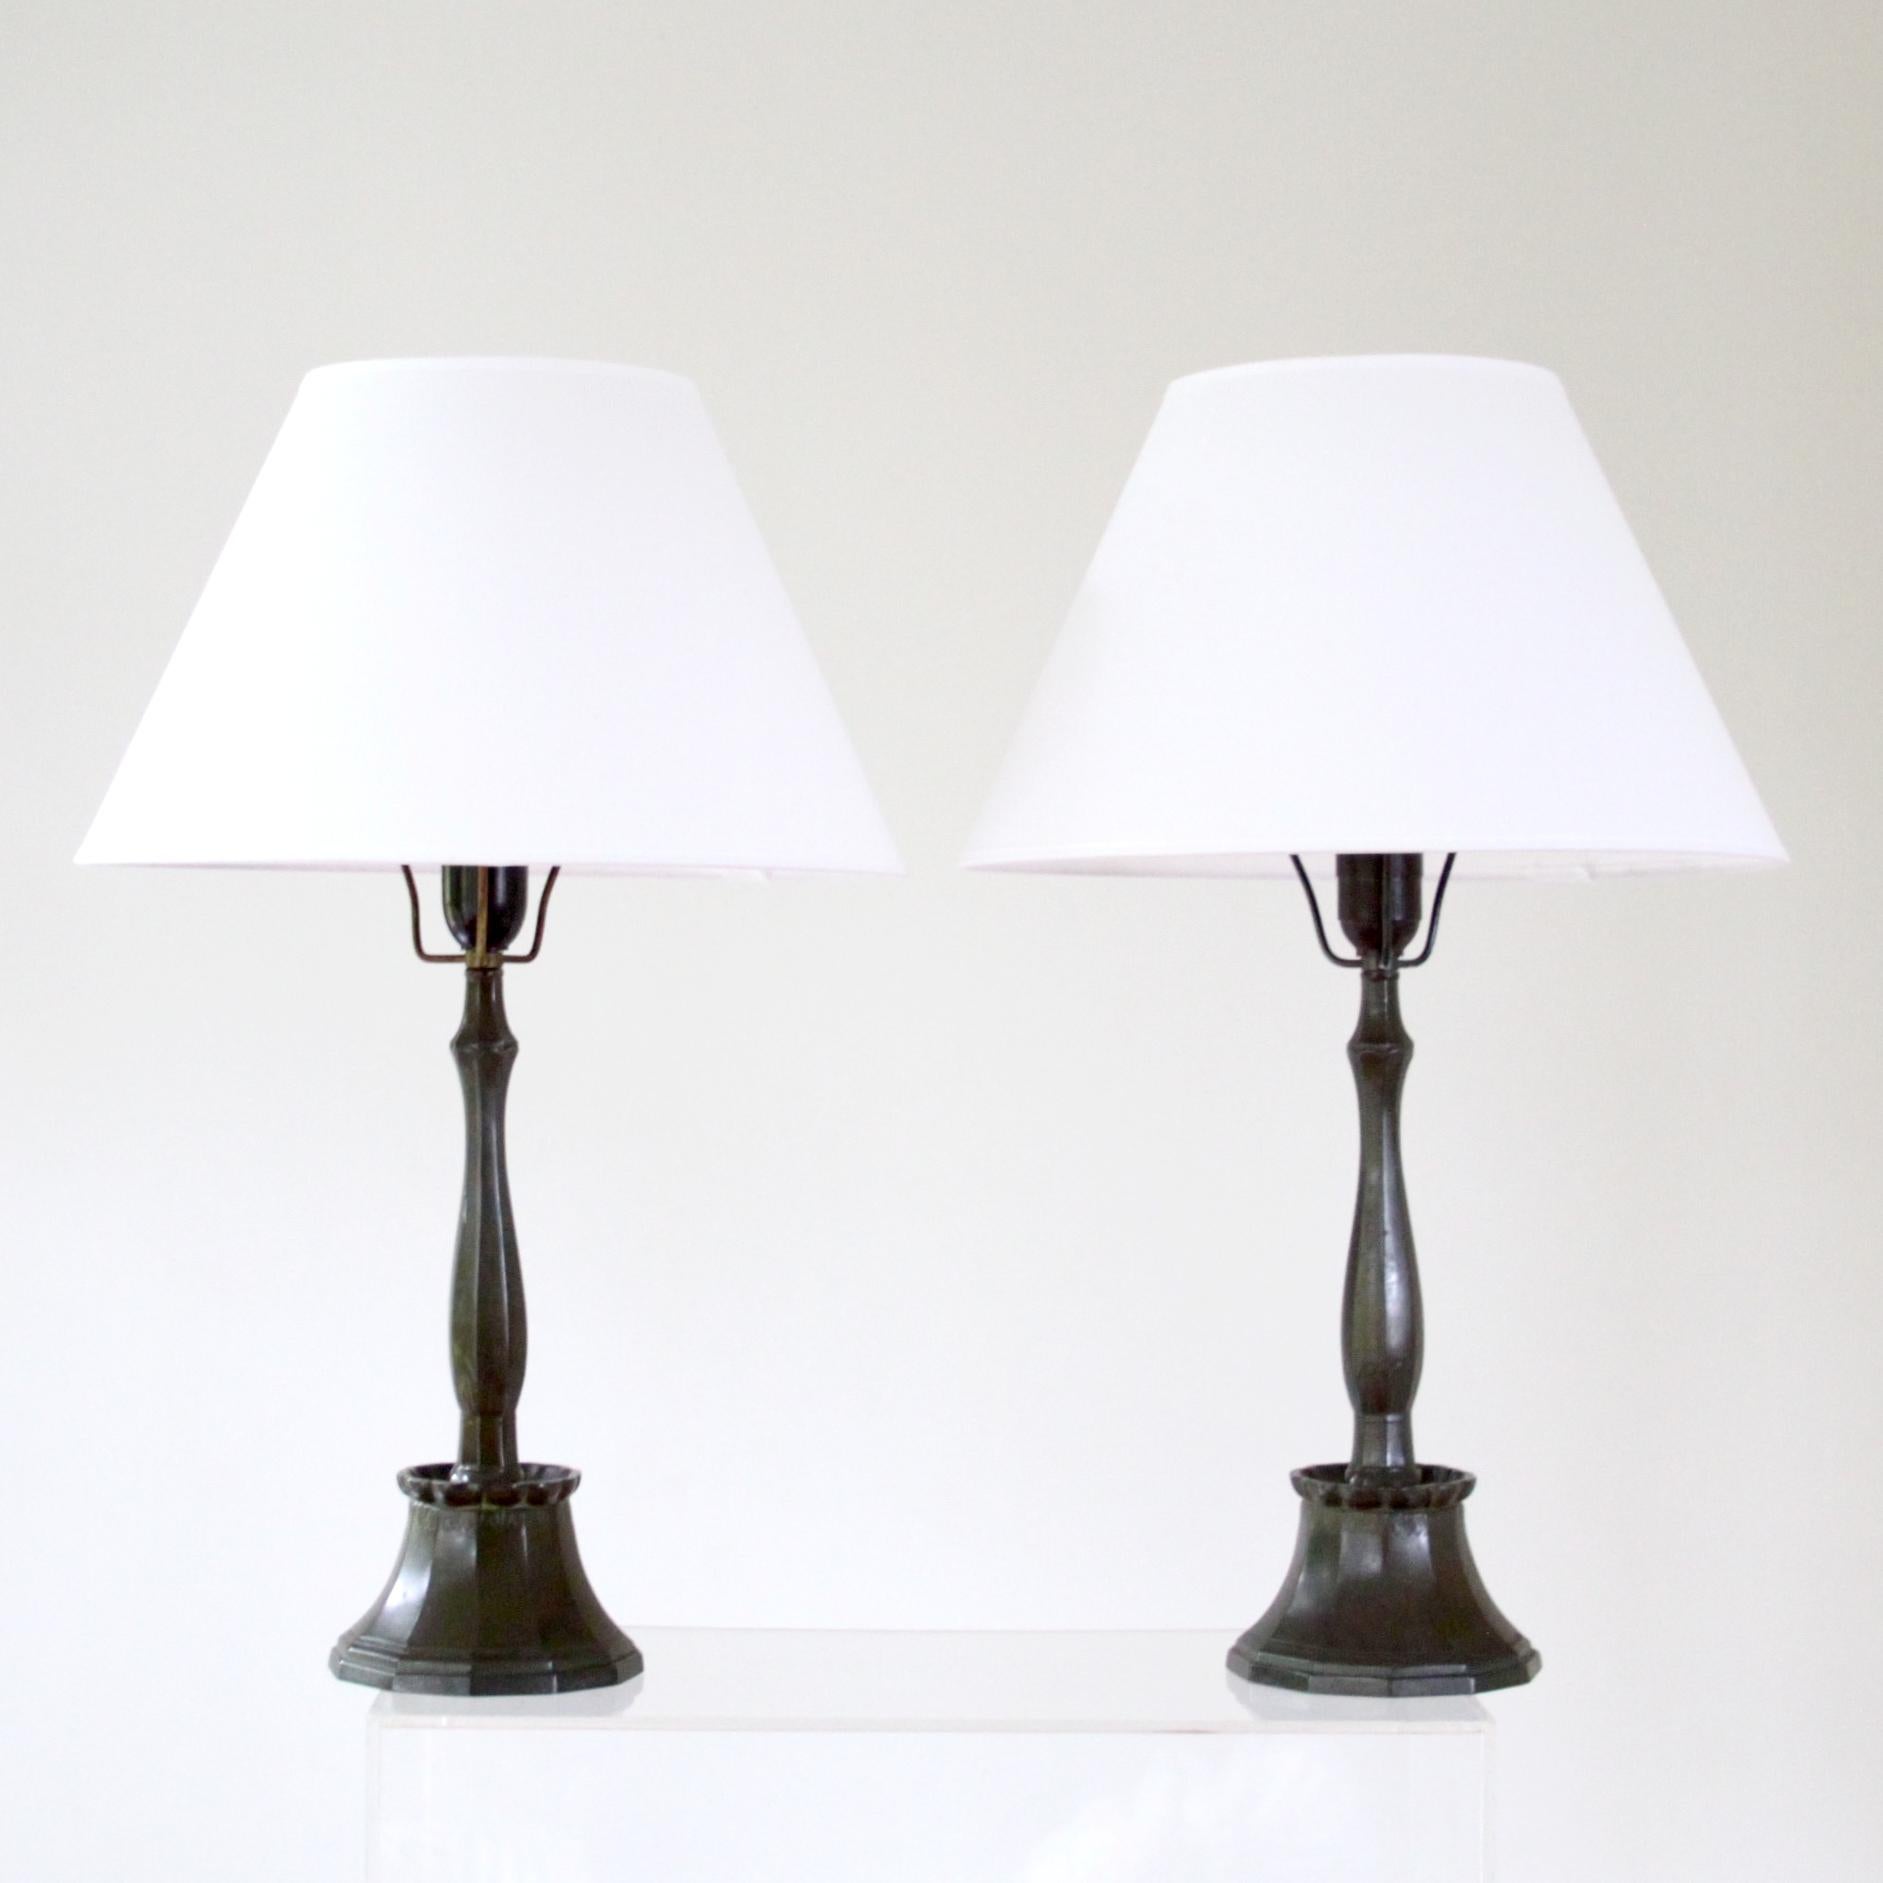 Pair of Just Andersen Lamps, Scandinavian Art Deco, Denmark 1920s In Good Condition For Sale In Copenhagen, DK